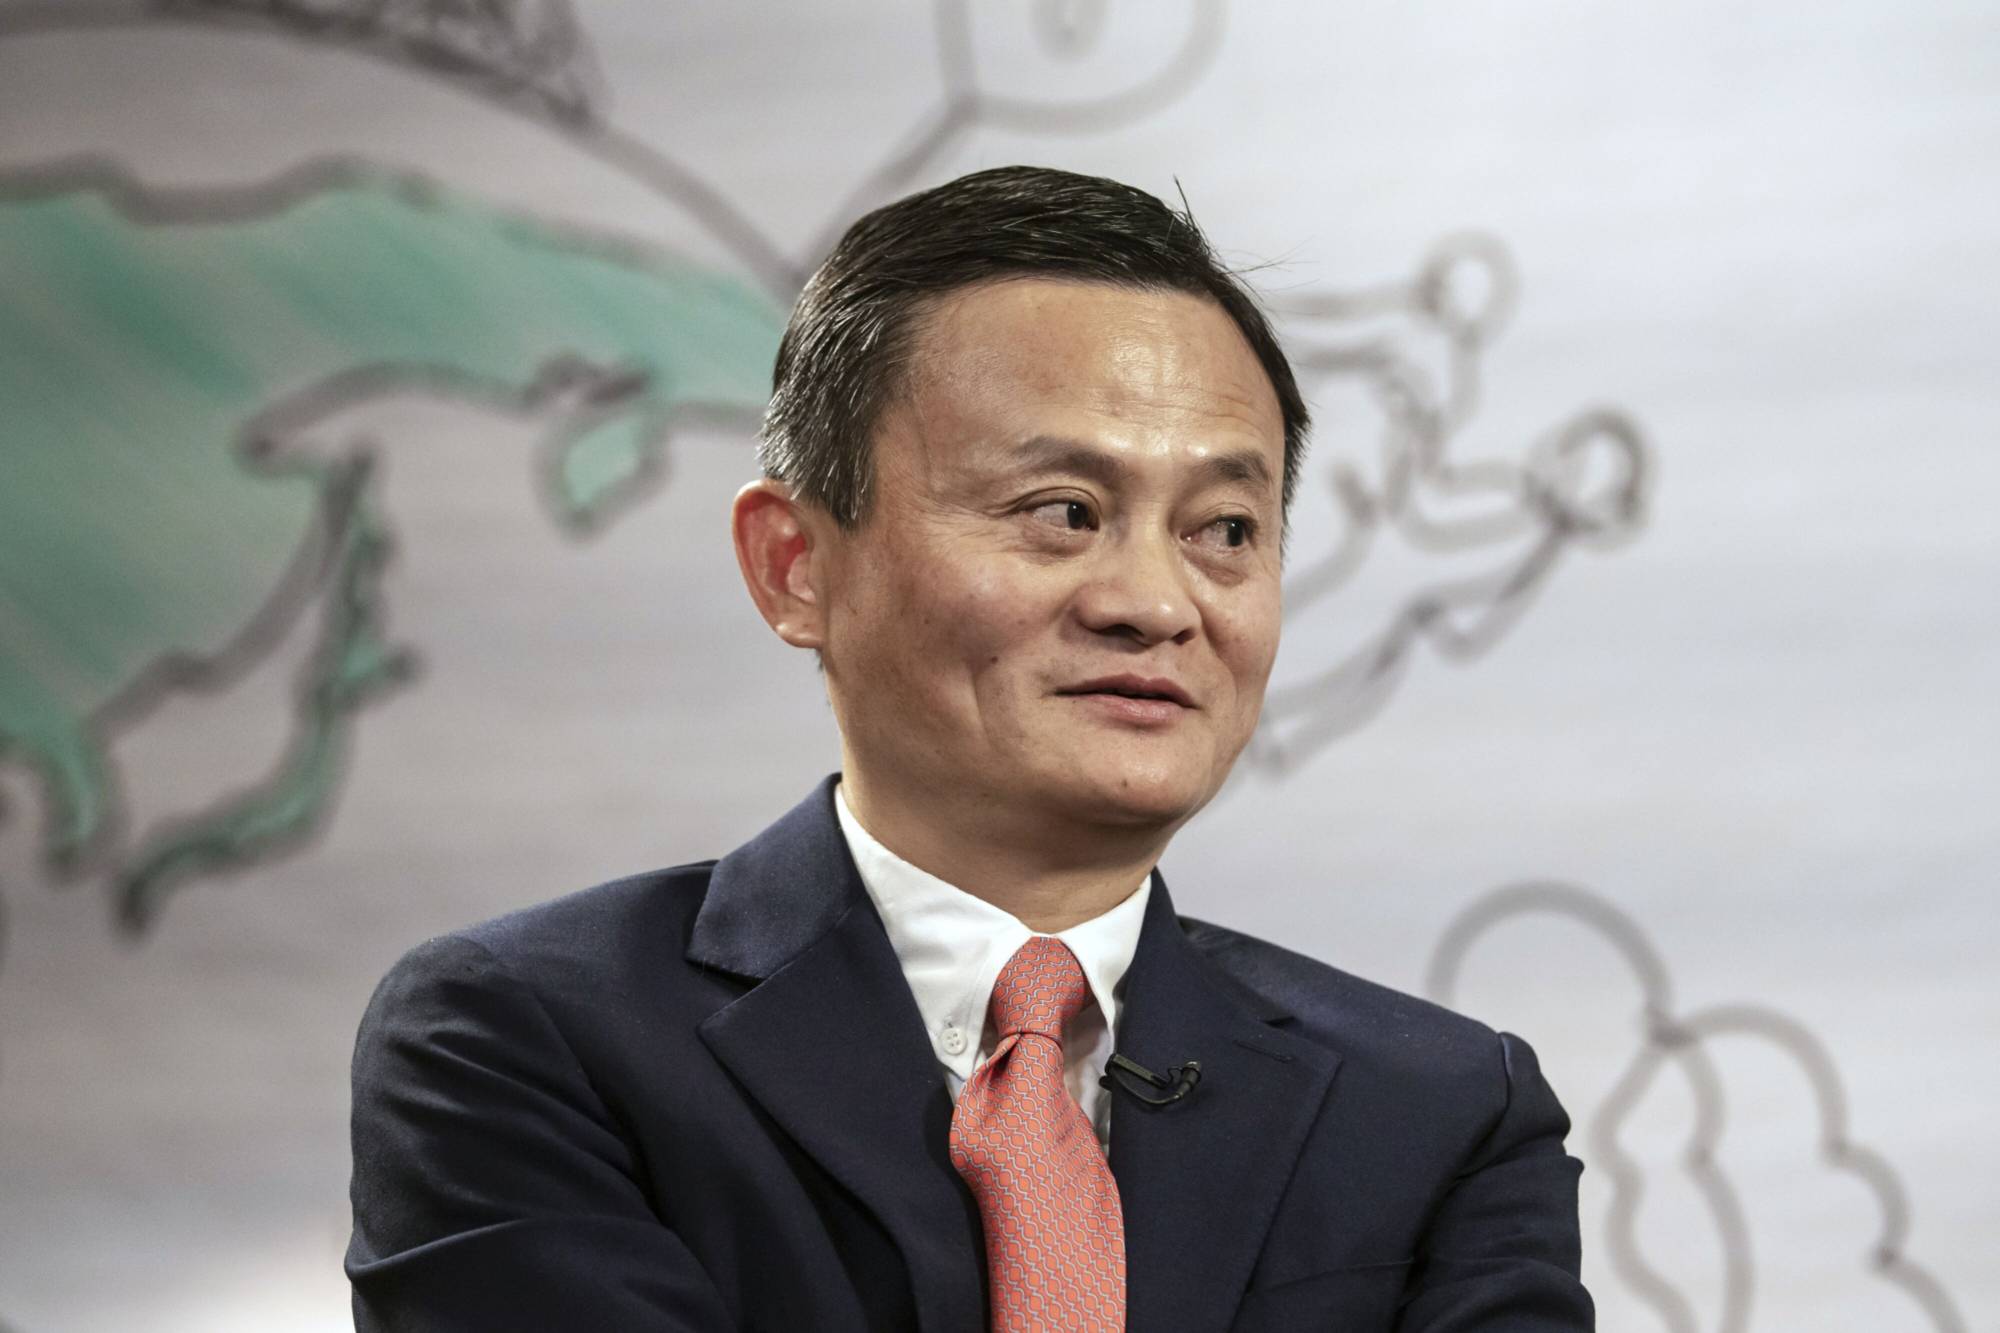 Trước khi thành lập Alibaba - công ty hoạt động trong lĩnh vực thương mại điện tử, điện toán đám mây, truyền thông và trí tuệ nhân tạo - Ma đã dạy tiếng Anh trong 8 năm tại Đại học Hàng Châu ở miền đông Trung Quốc. Ảnh: @AFP.